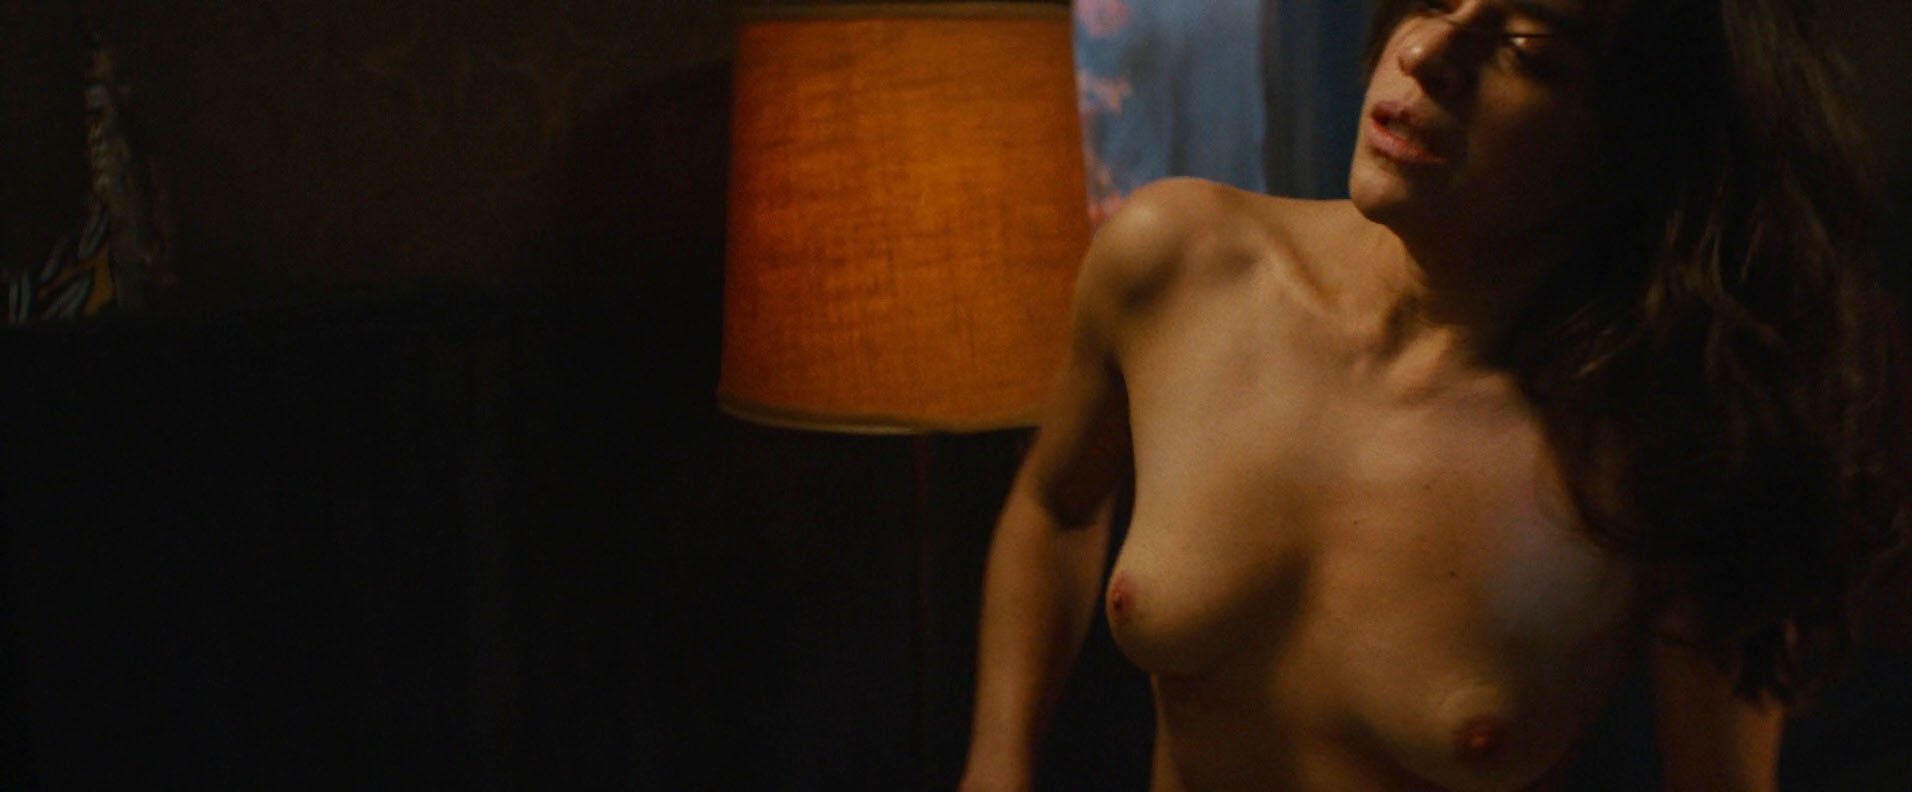 damu guni recommends Michelle Rodriguez Nude Movie